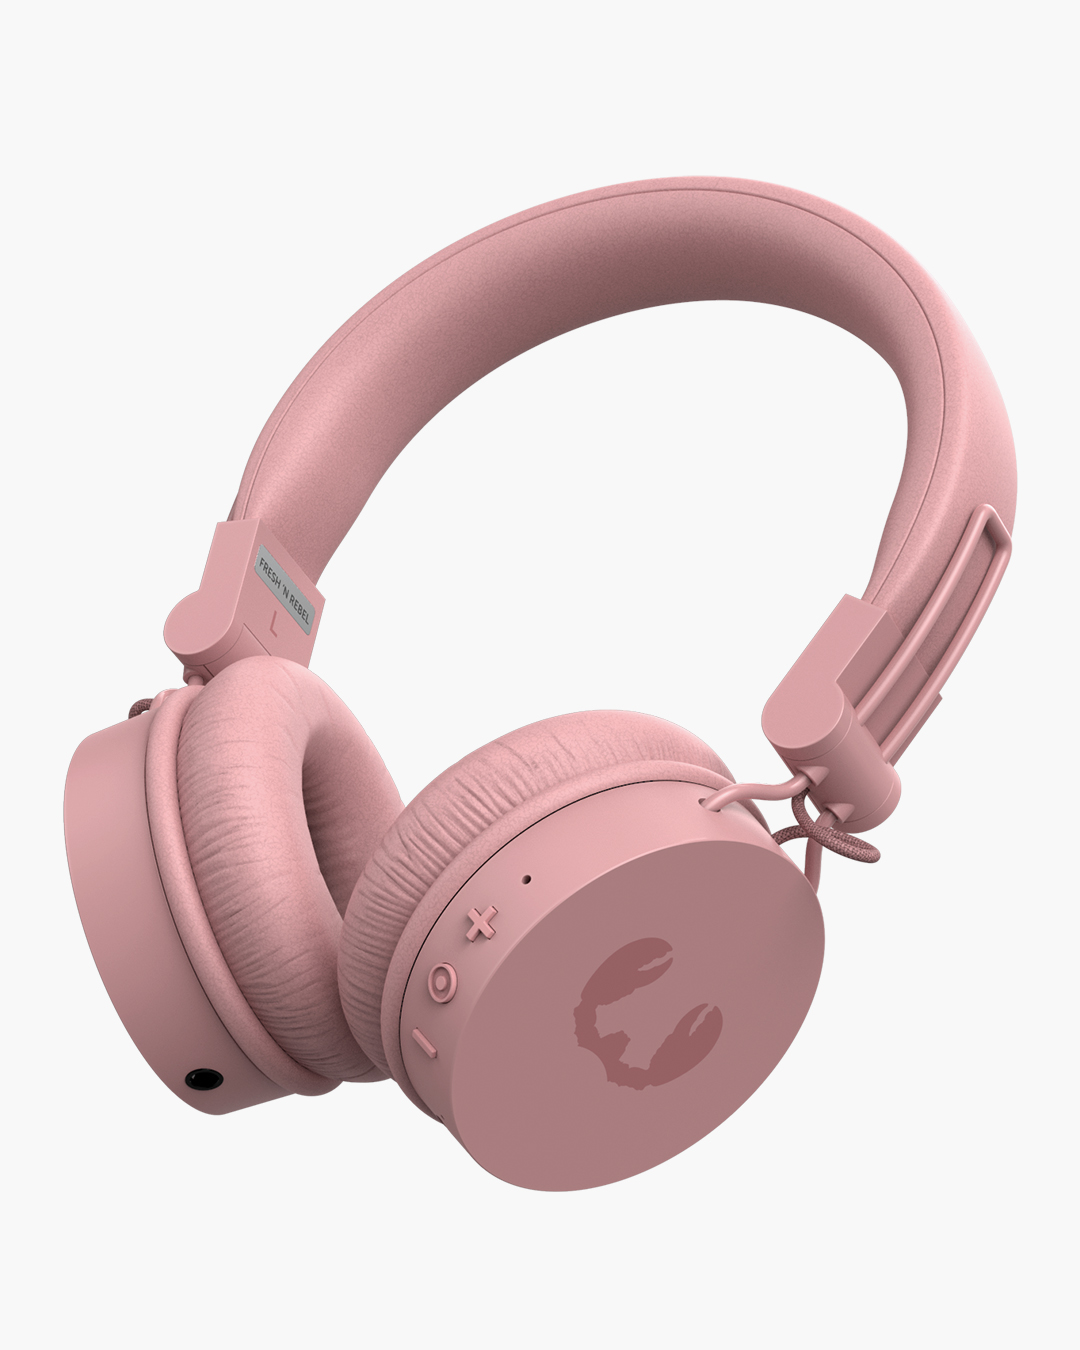 Fresh 'n Rebel - Caps 2 Wireless - Wireless on-ear headphones - Dusty Pink